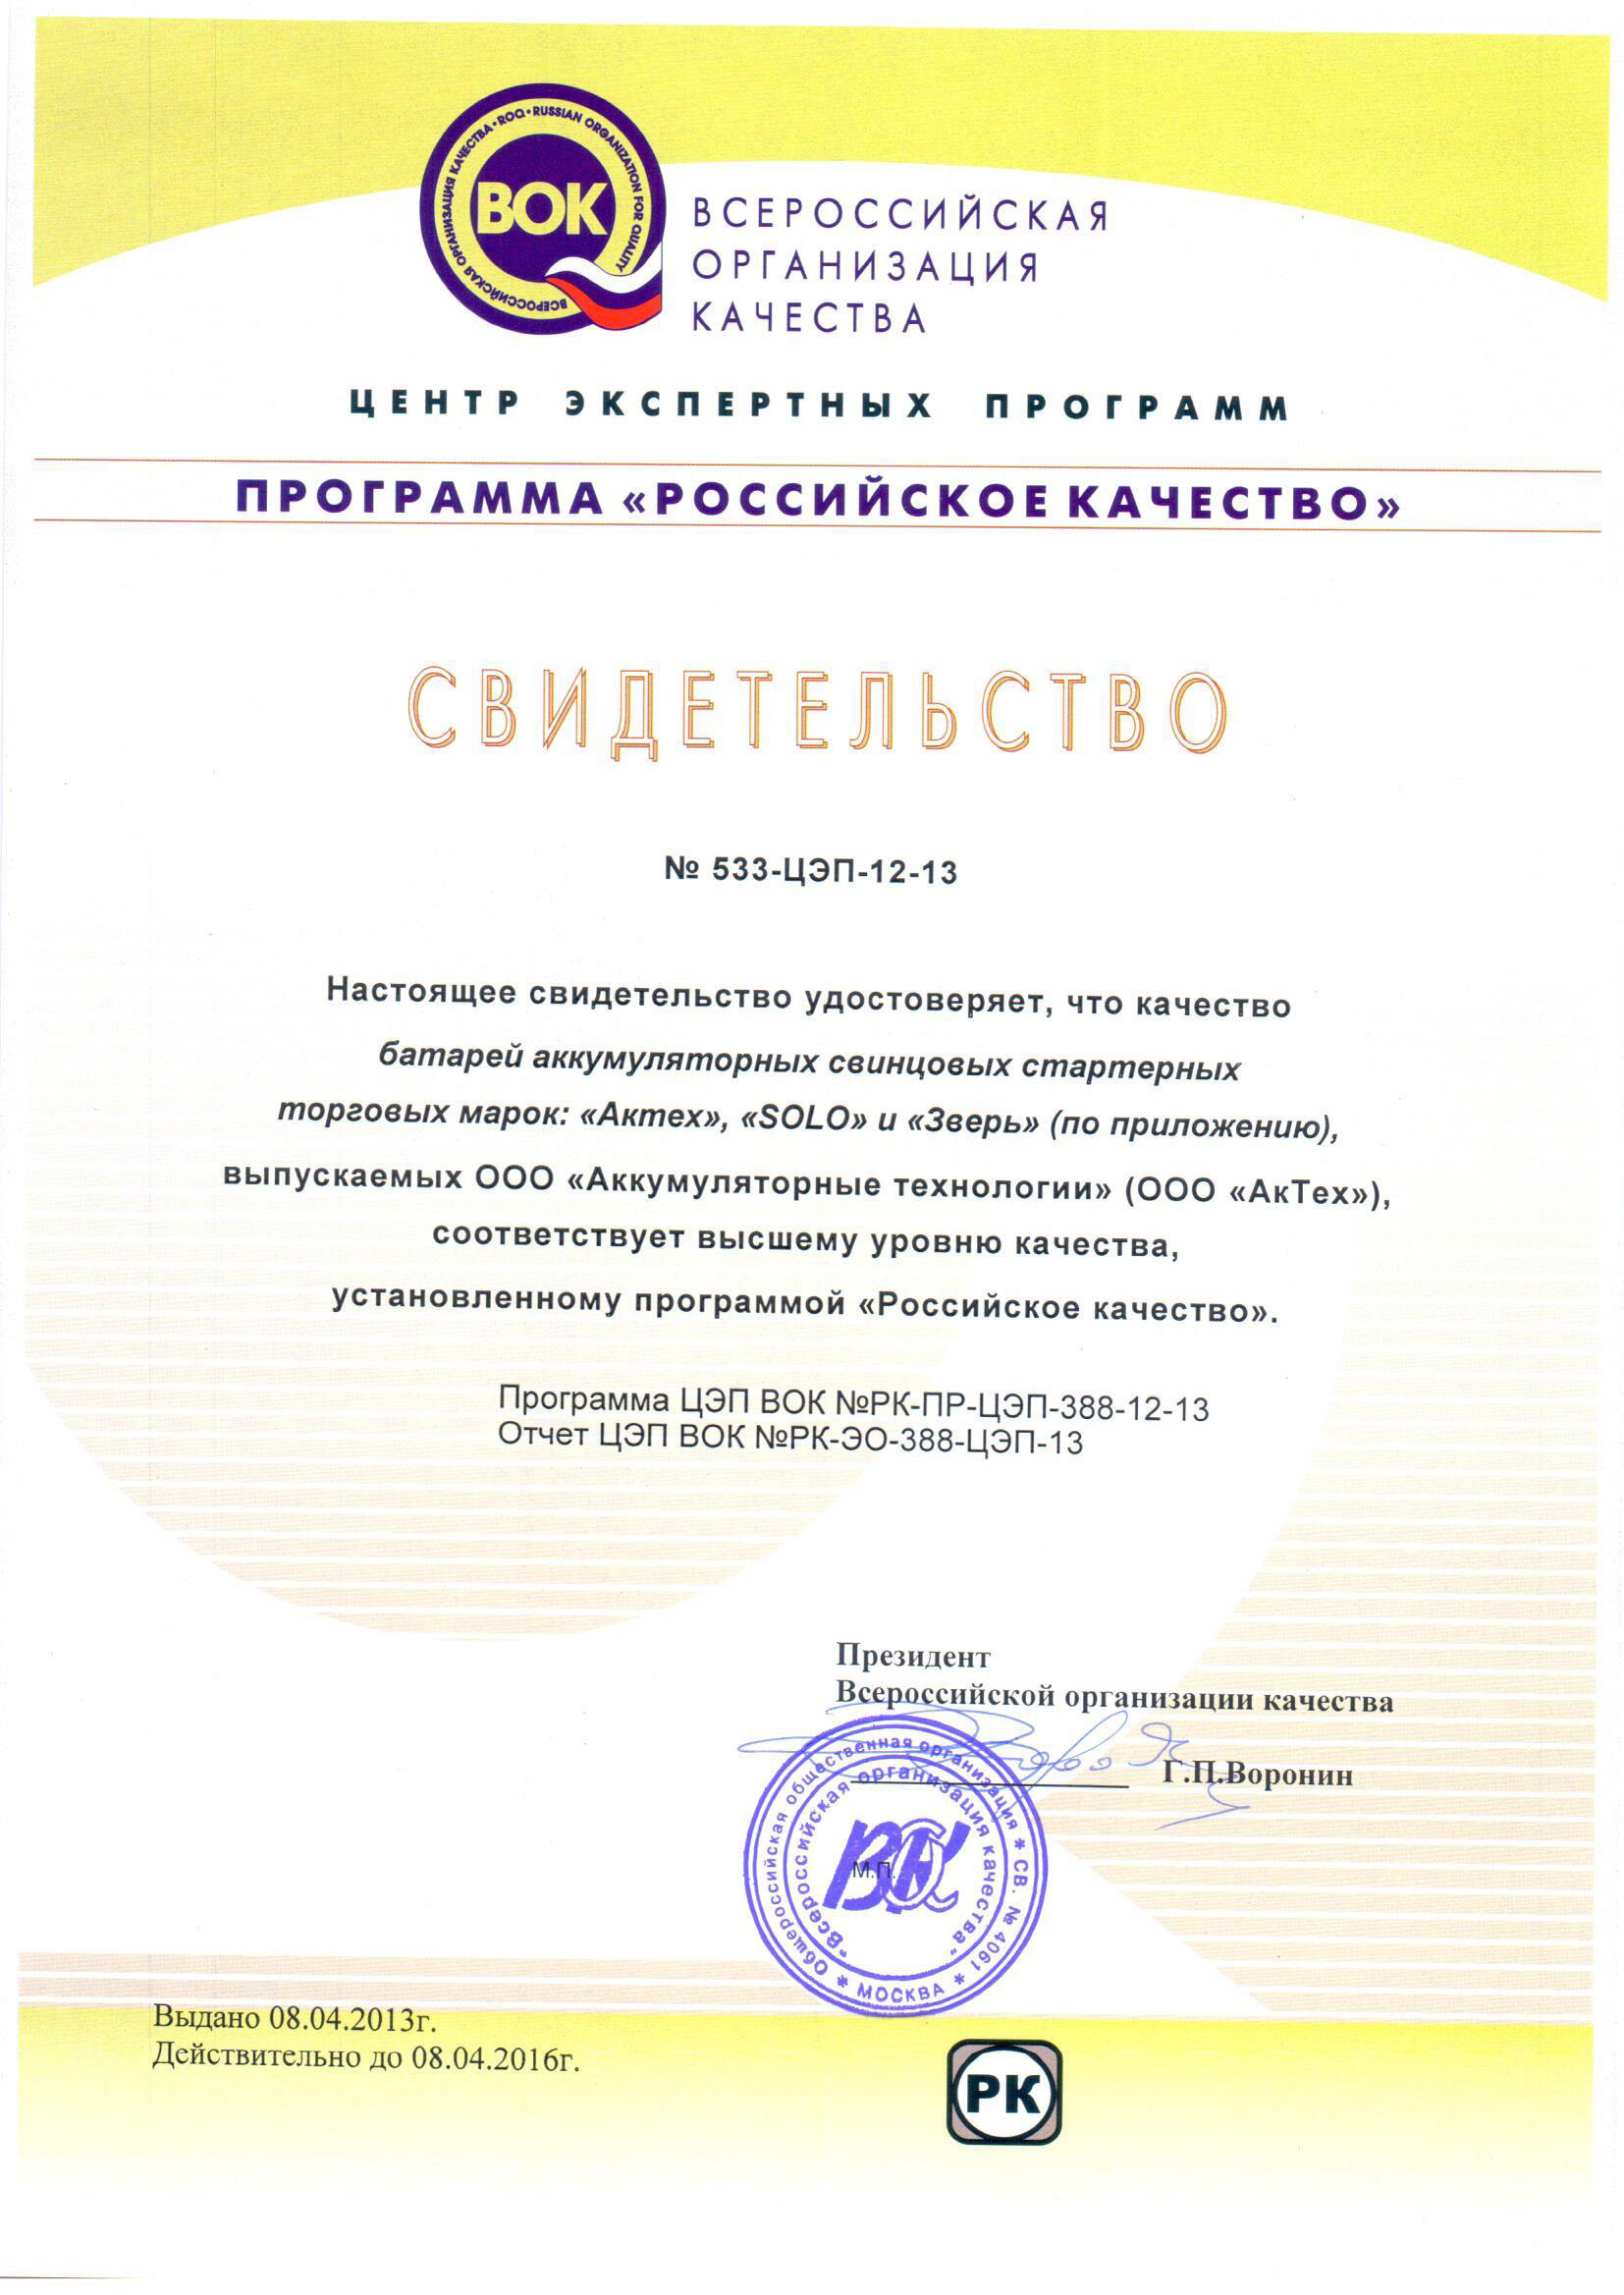 Программа российское качество. Всероссийская организация качества. Российское качество. Российское качество 2016